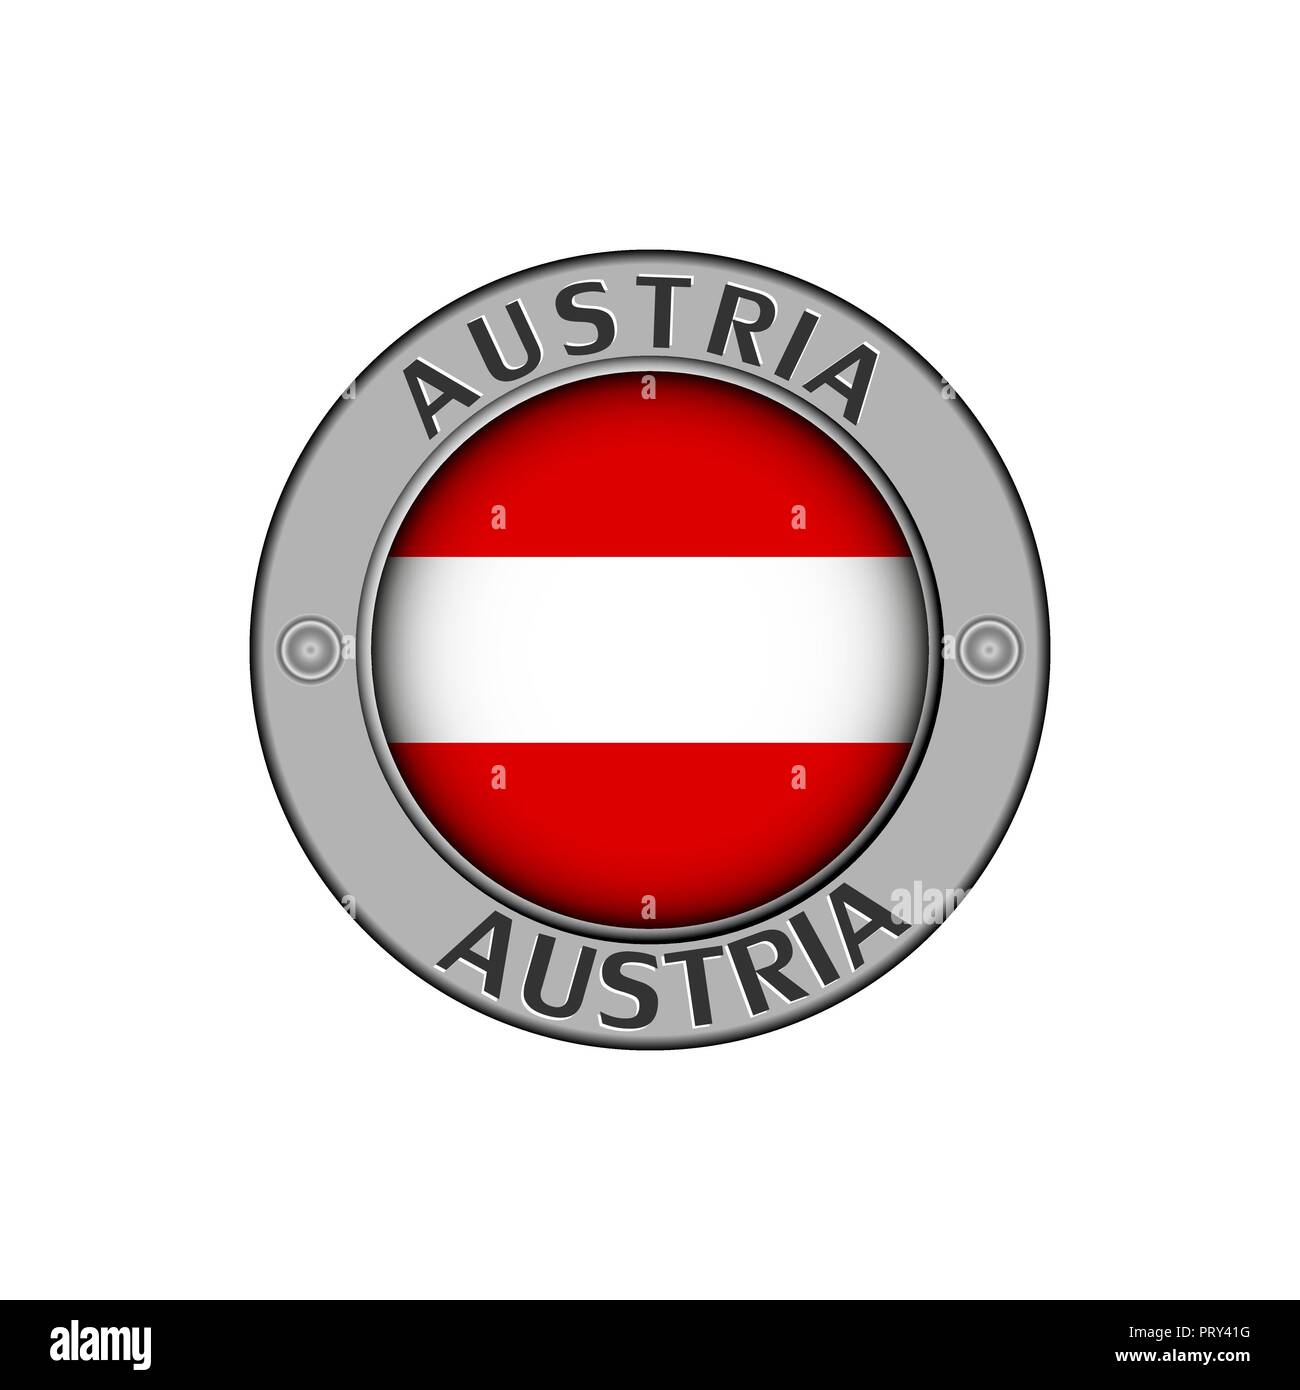 Rotondo di metallo medaglione con il nome del paese Austria e un indicatore rotondo nel centro Illustrazione Vettoriale